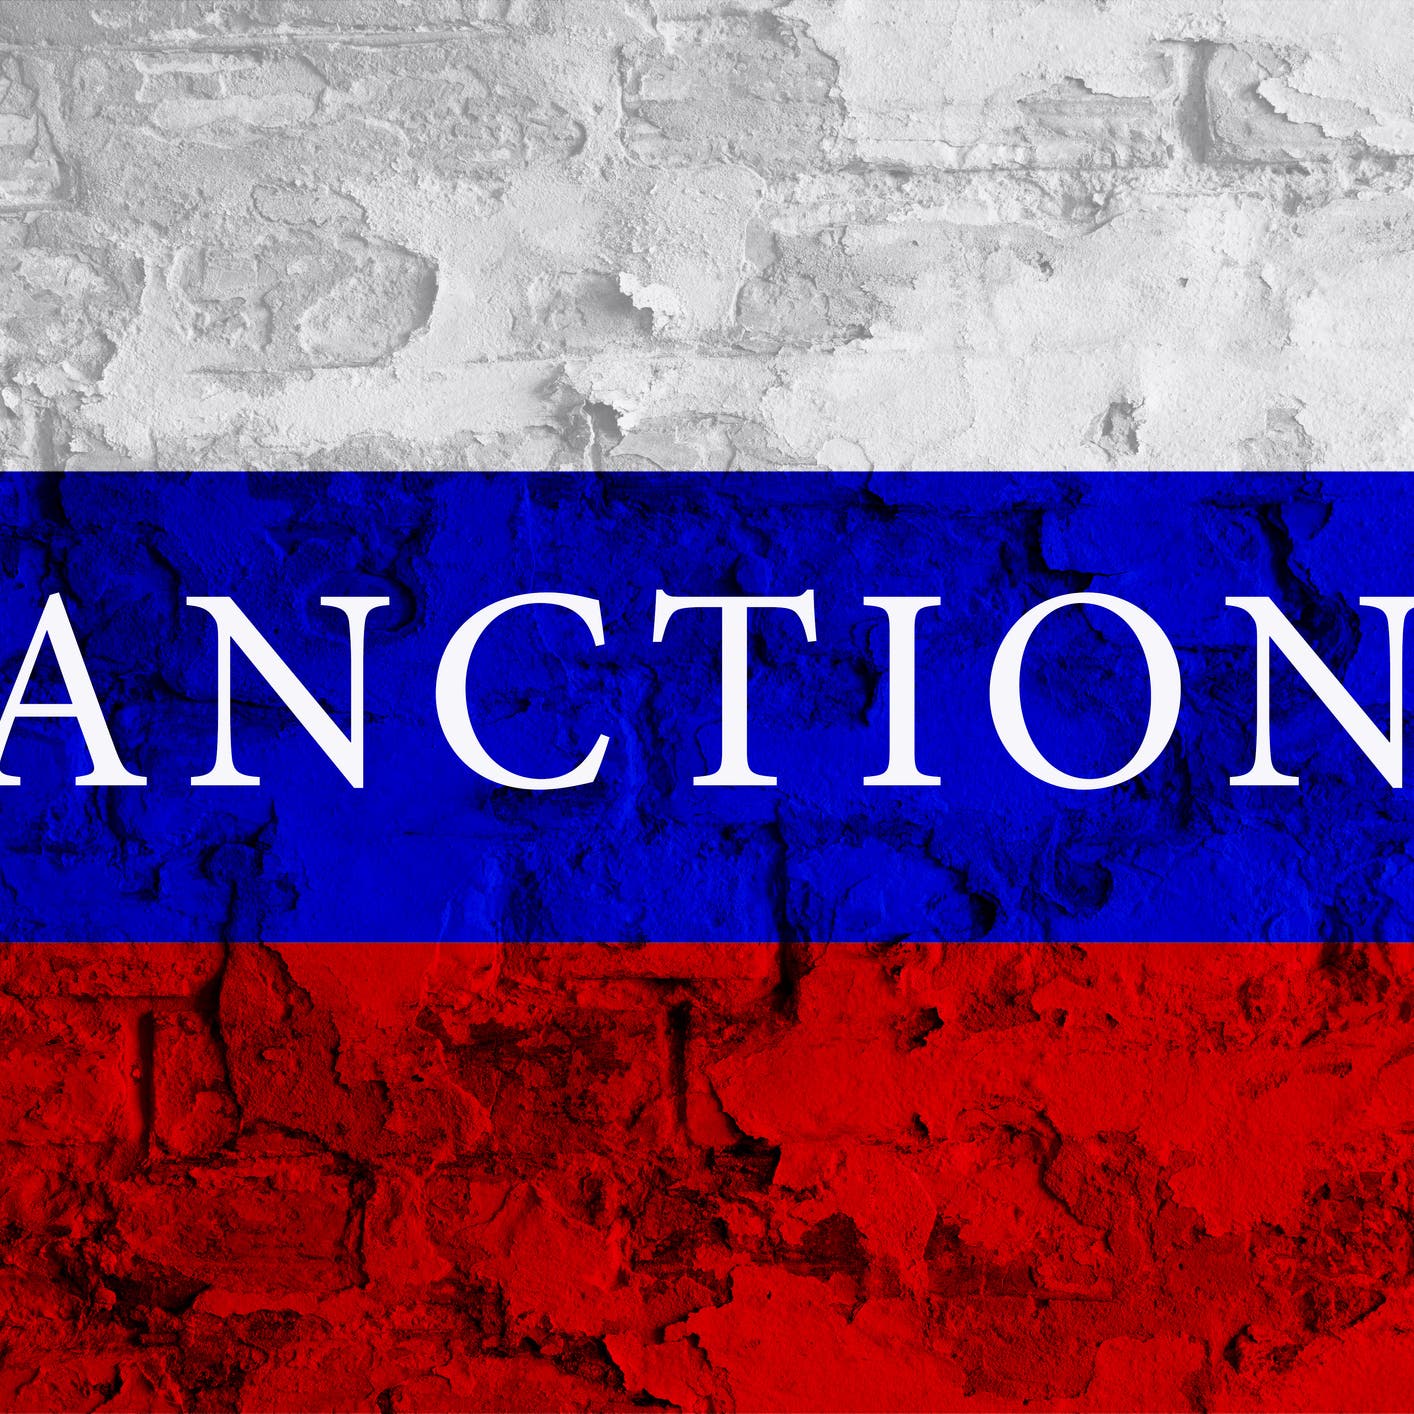 العقوبات تقوّض 15 عاماً من المكاسب الاقتصادية في روسيا